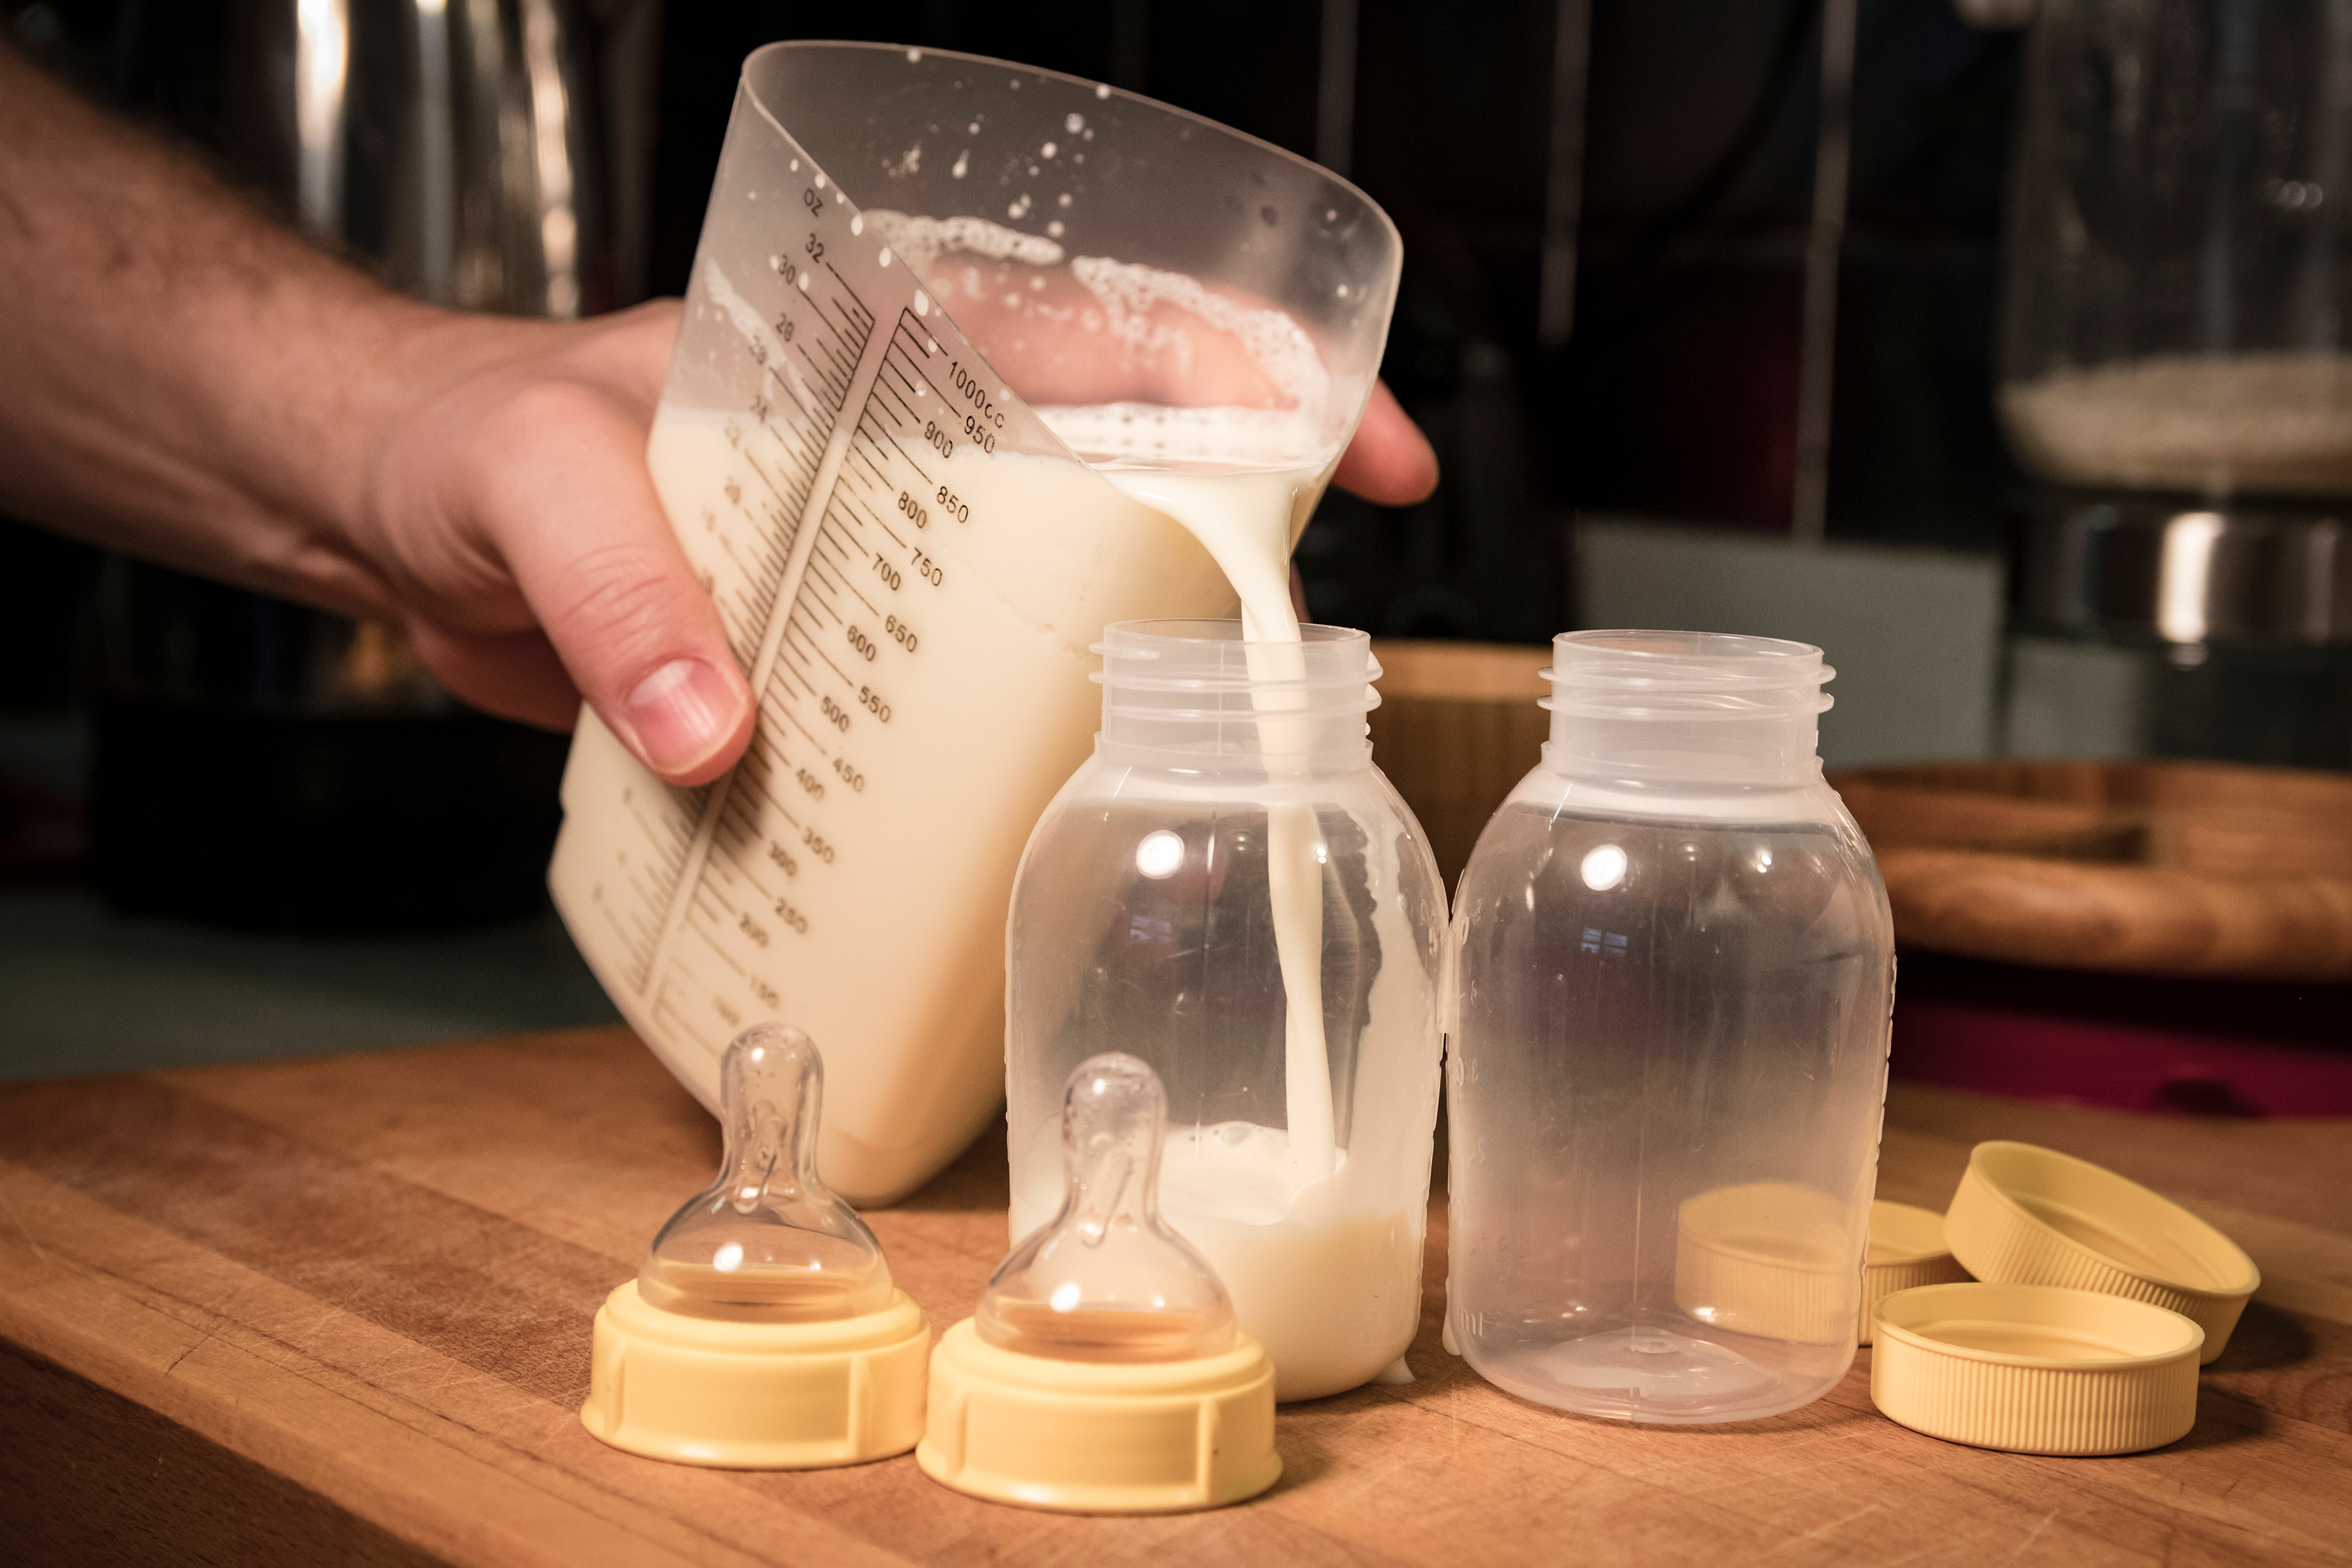 La leche de fórmula puede ser adecuada para los bebés, pero expertos advierten que los niños pequeños no la necesitan